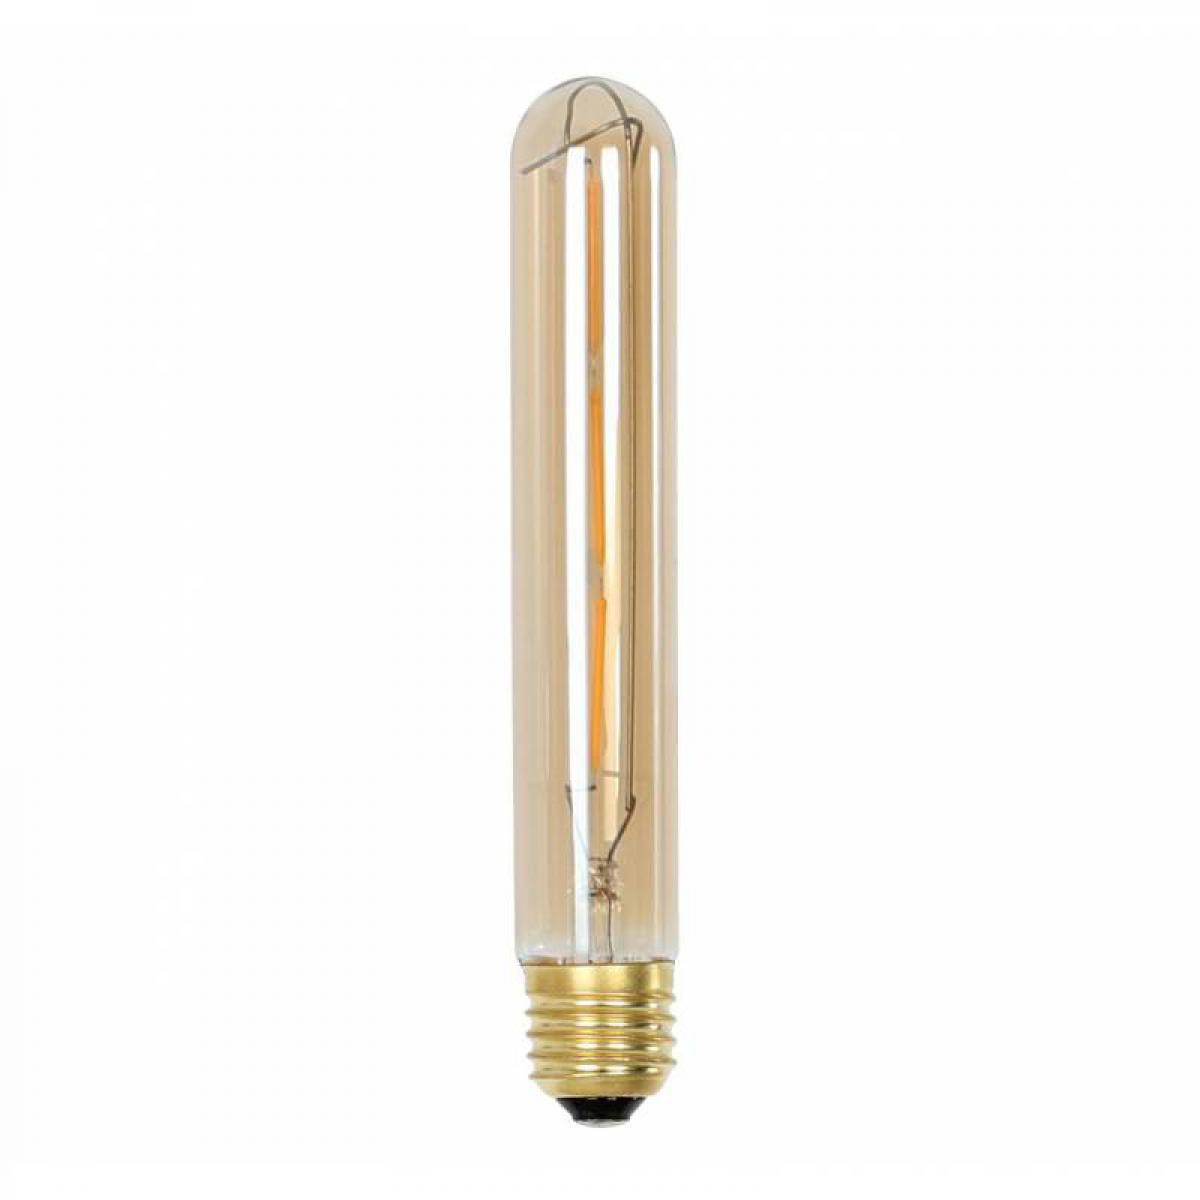 L'Héritier Du Temps - Ampoule Edison Tube à LED E27 Puissance 3W Dimmable Lumière Ambrée 3x3x30cm - Ampoules LED